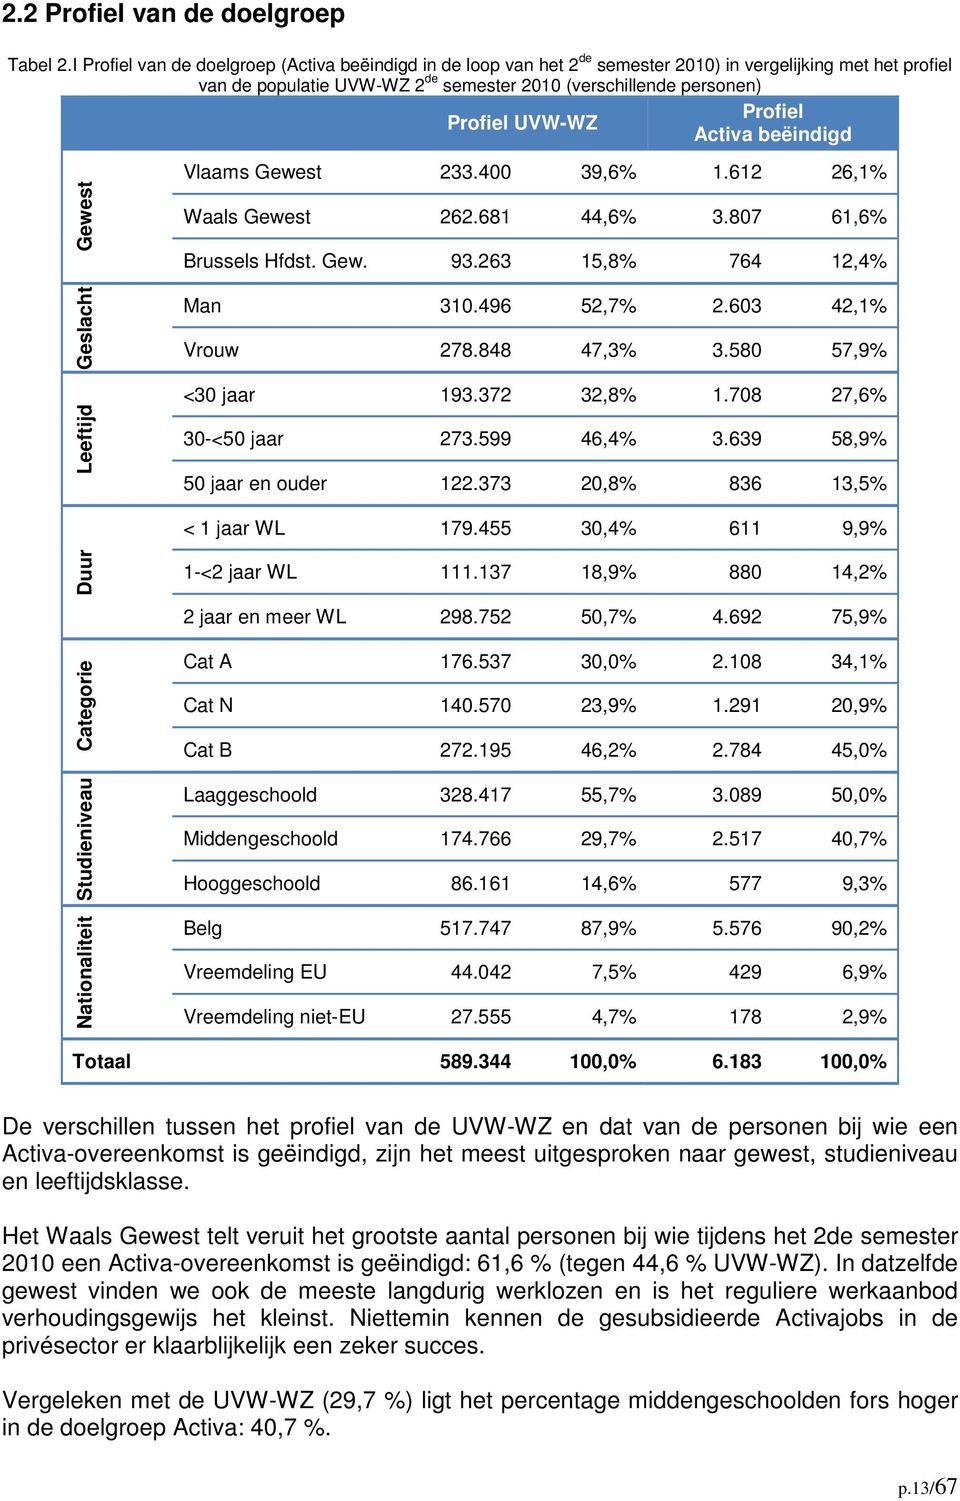 UVW-WZ Activa beëindigd Gewest Vlaams Gewest 233.400 39,6% 1.612 26,1% Waals Gewest 262.681 44,6% 3.807 61,6% Brussels Hfdst. Gew. 93.263 15,8% 764 12,4% Geslacht Leeftijd Man 310.496 52,7% 2.